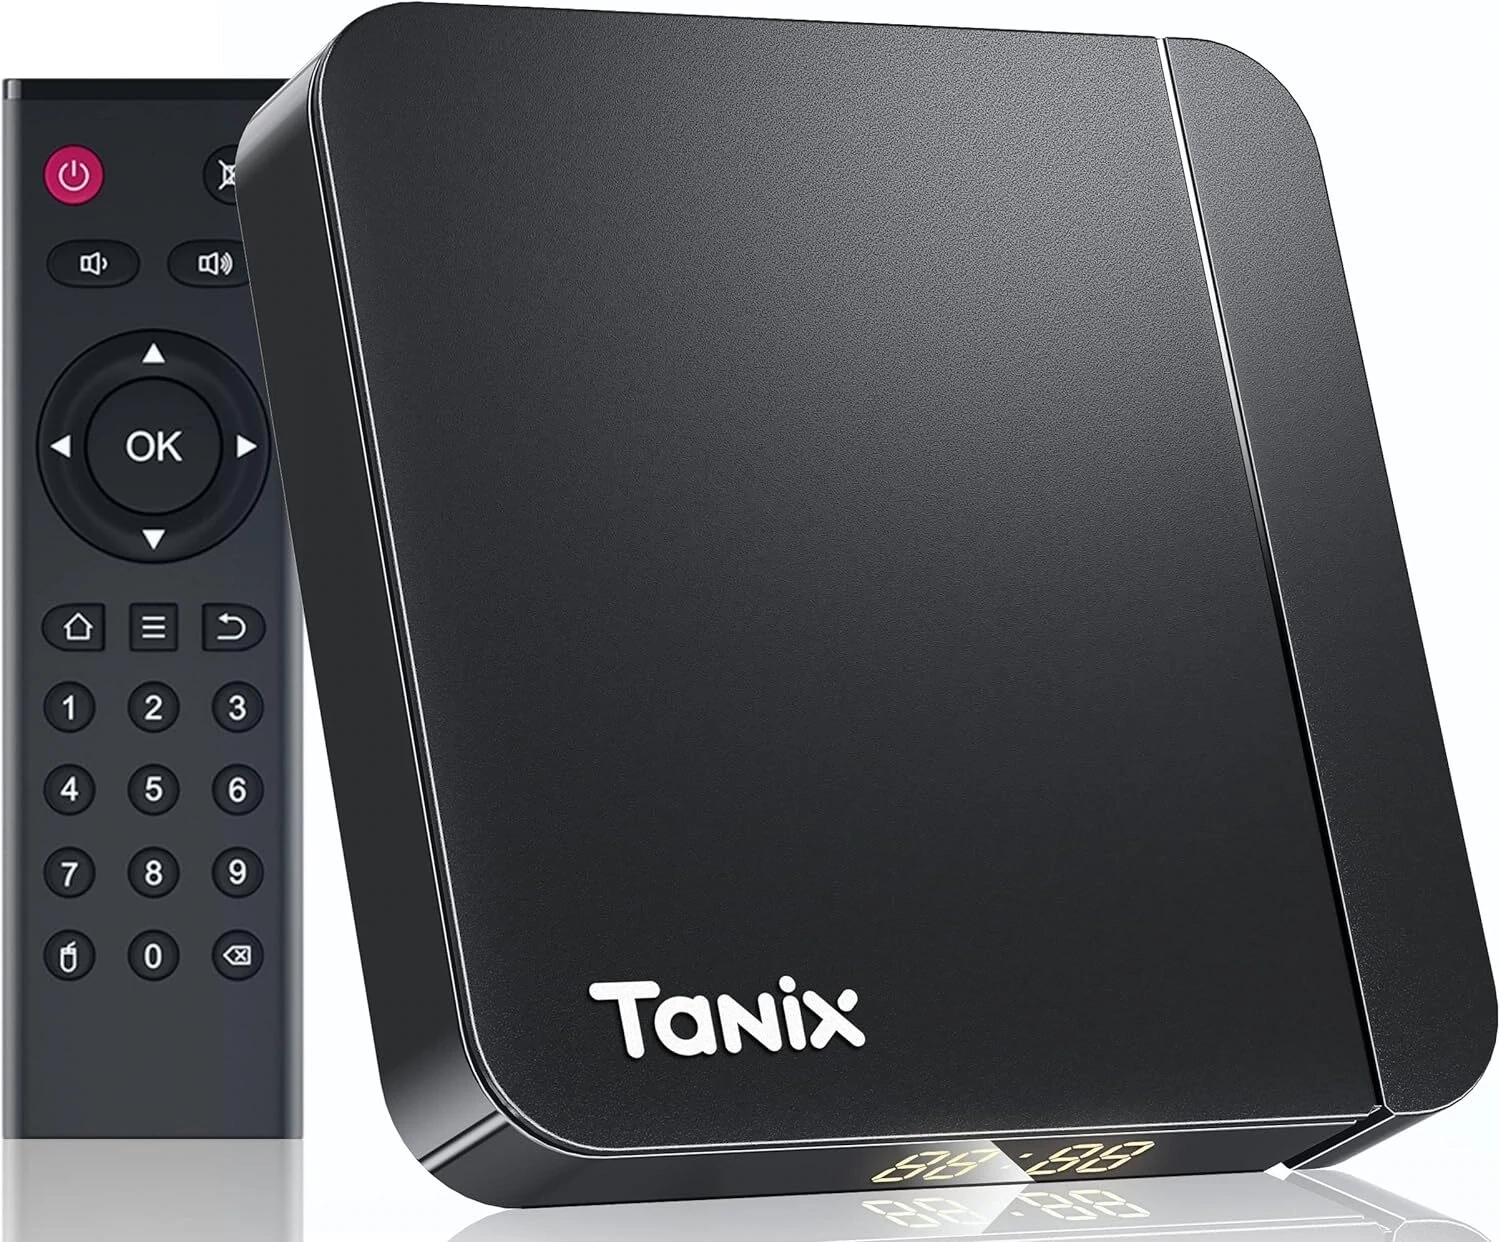 Tanix Android TV Box 11.0, Android 11 TV Box 4GB RAM 32GB ROM AV1 6K/4K 3D USB 3.0 BT 5.0 Amlogic S905W2 Quad Core 64 Bits